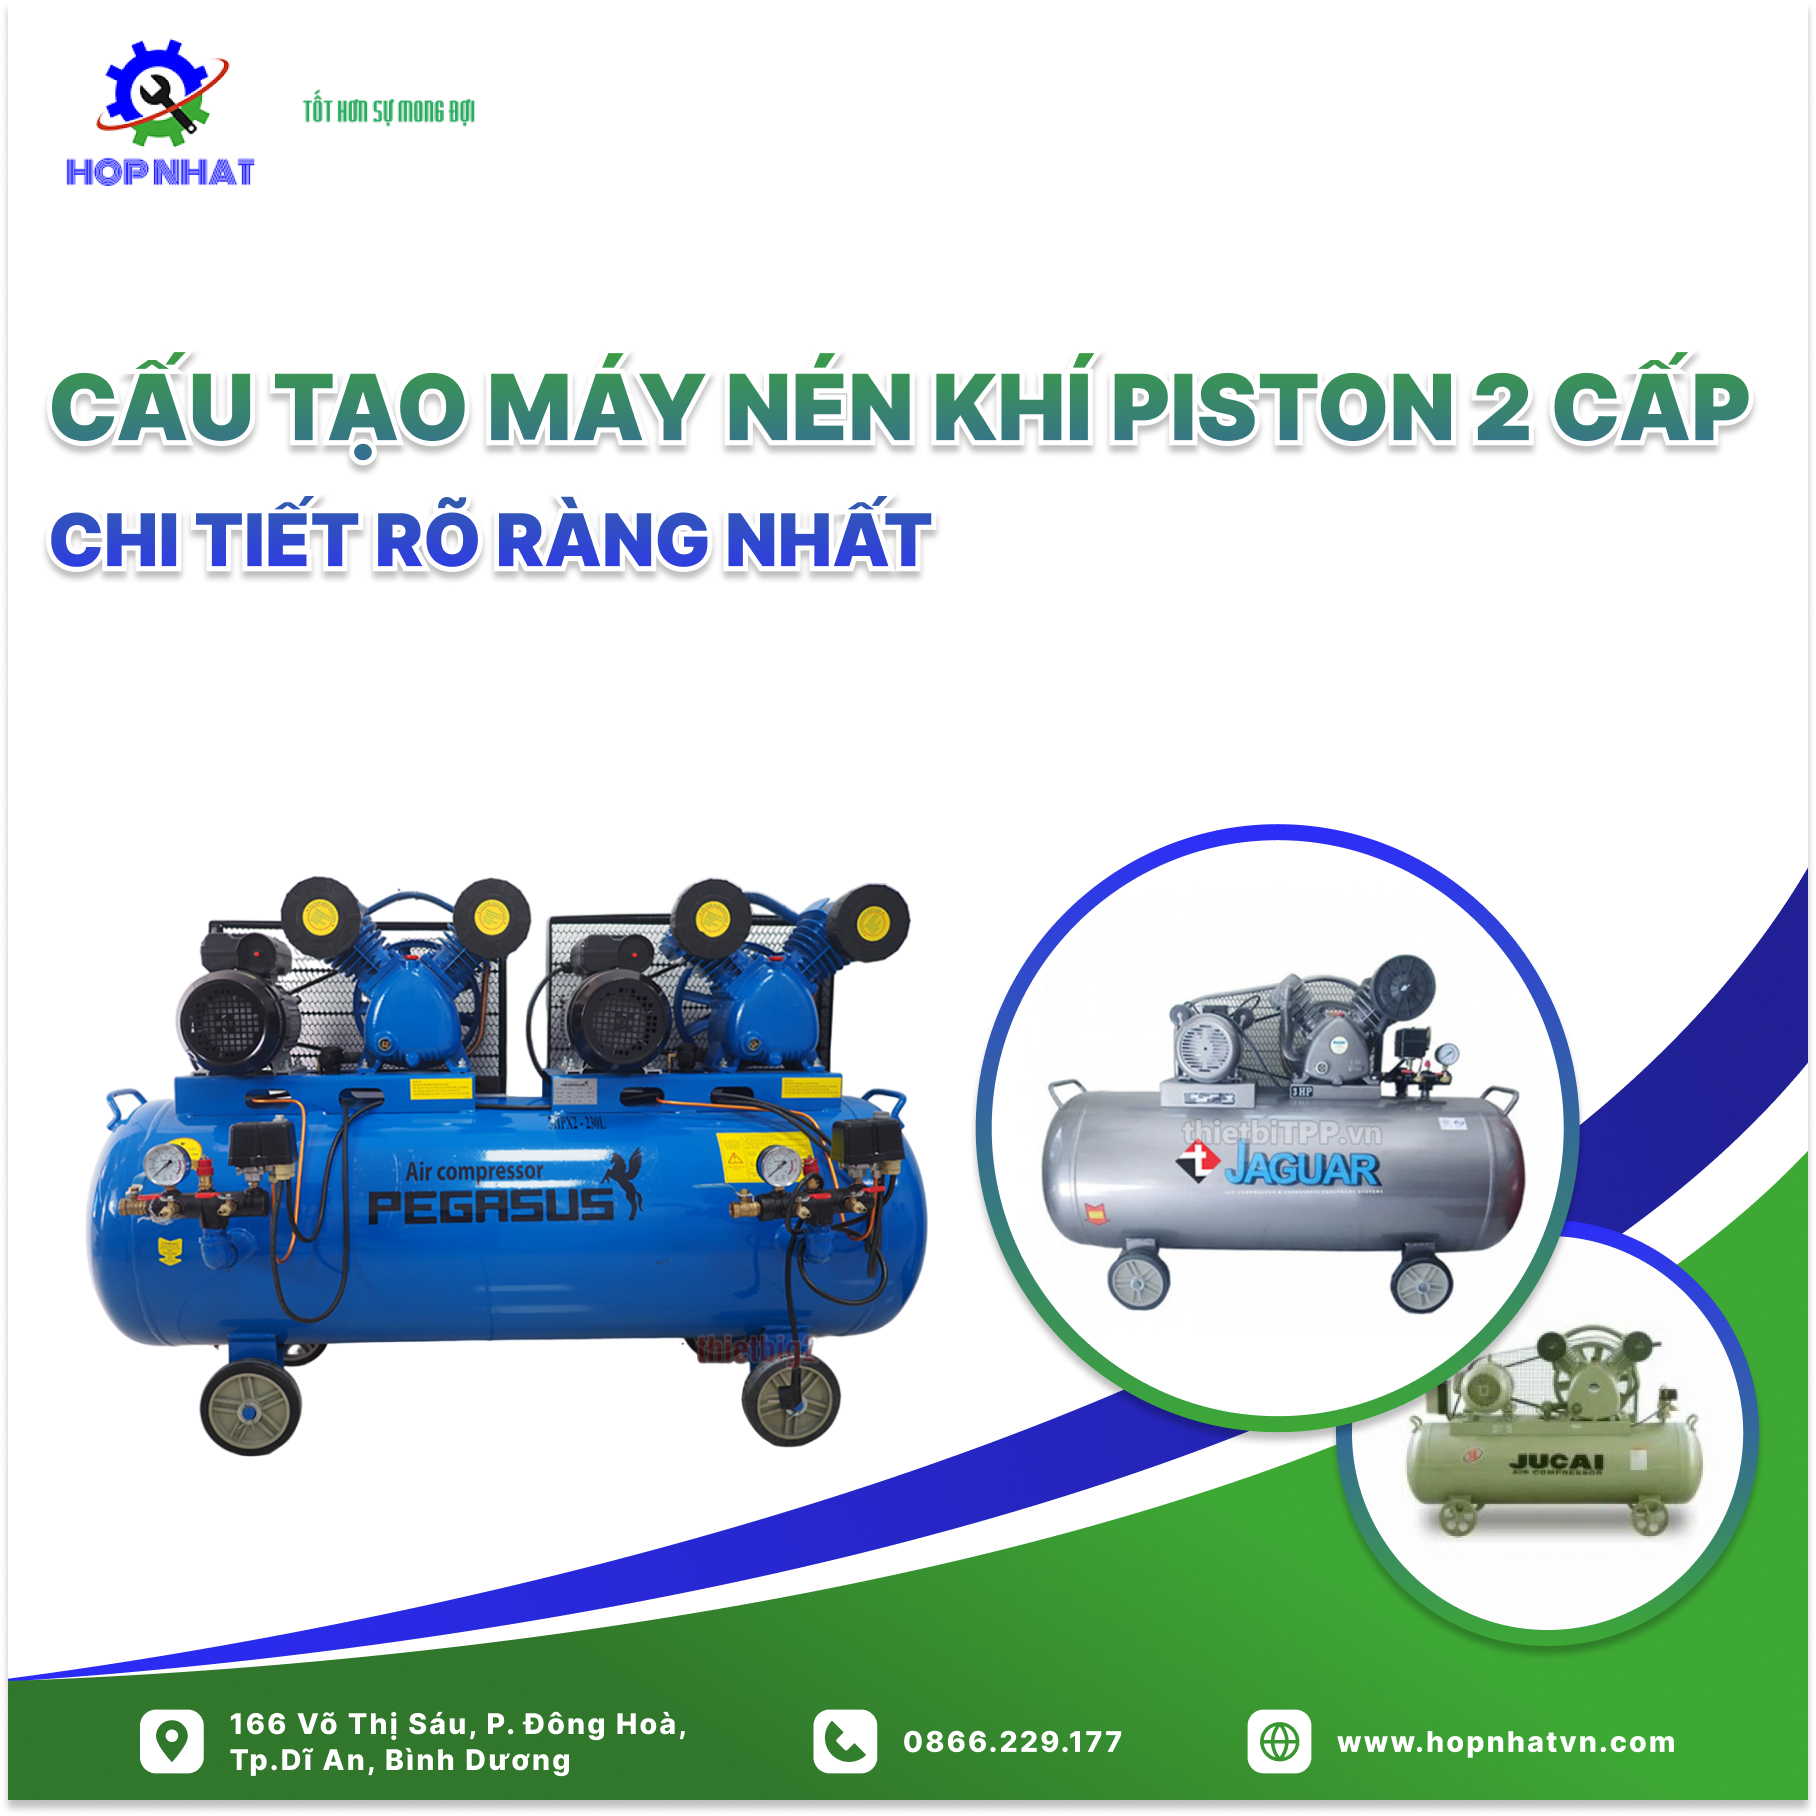 <p>Máy nén khí piston 2 cấp là thiết bị sử dụng phổ biến trong nhiều lĩnh vực công nghiệp, sản xuất và đời sống. Hiểu rõ cấu tạo máy nén khí piston 2 cấp chi tiết sẽ giúp người sử dụng vận hành, bảo trì và sửa chữa hiệu quả.</p>